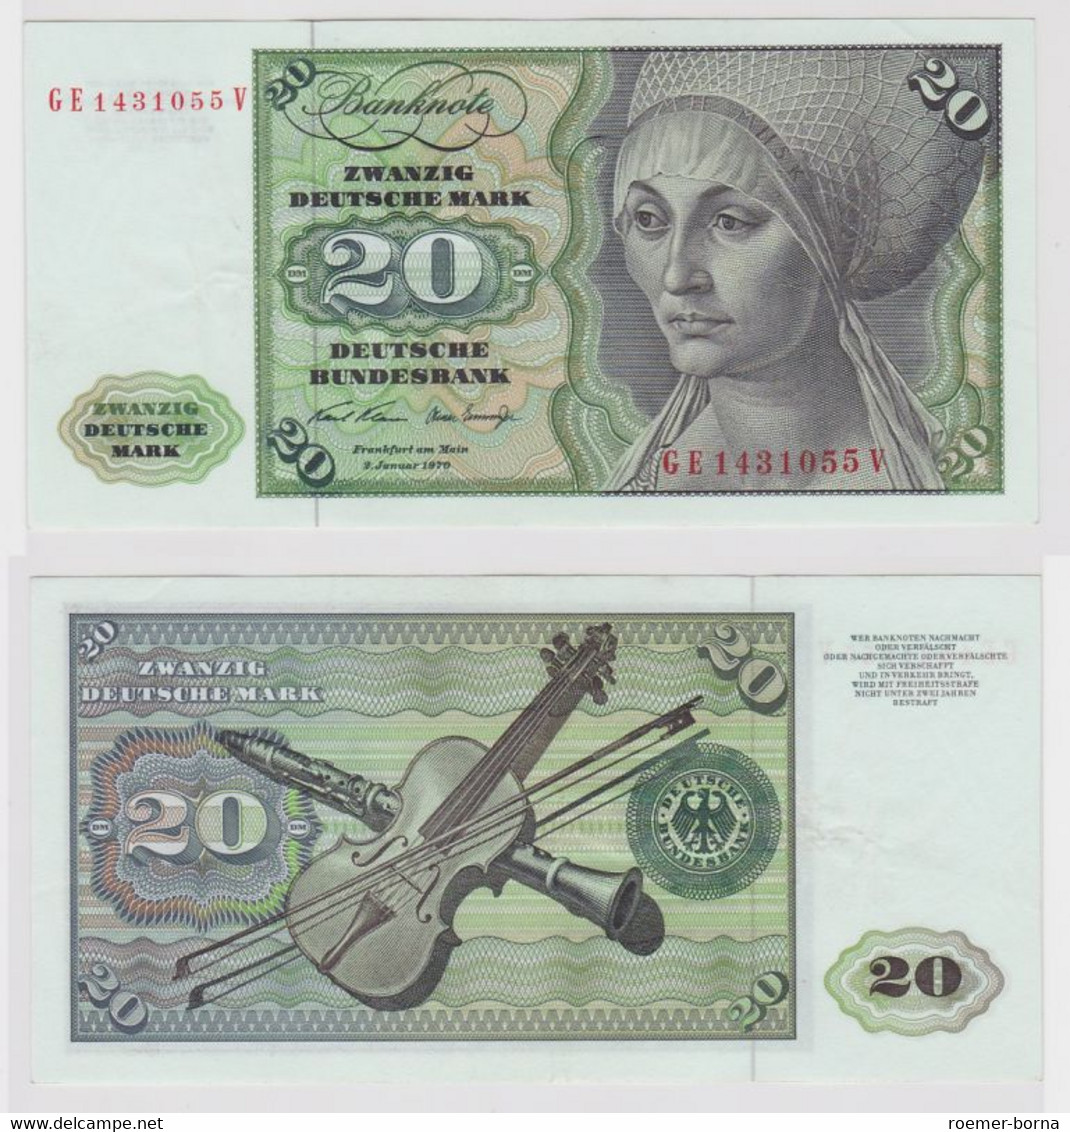 T115557 Banknote 20 DM Deutsche Mark Ro. 271b Schein 2.Jan. 1970 KN GE 1431055 V - 20 DM